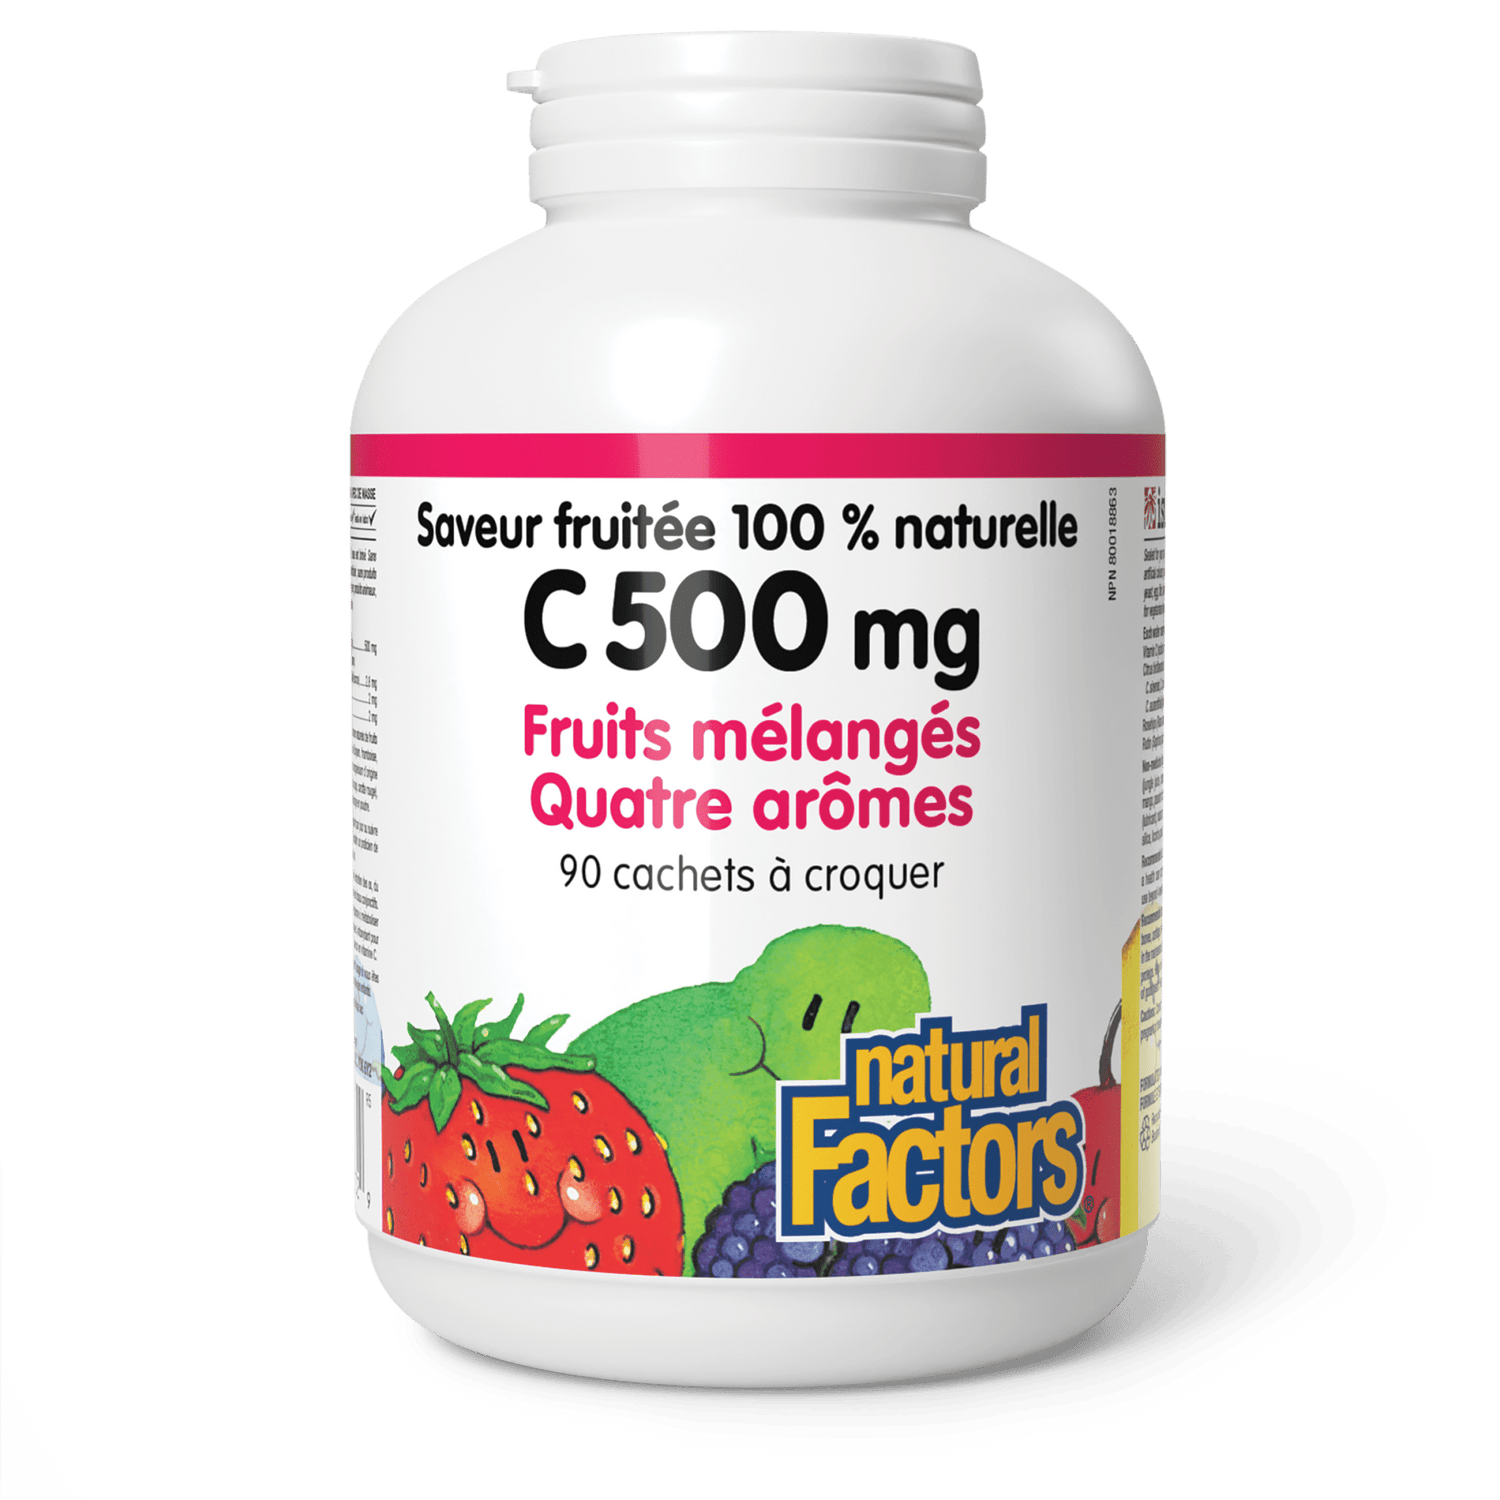 C 500 mg saveur fruitée 100 % naturelle, fruits mélangés, quatre arômes, Natural Factors|v|image|1332